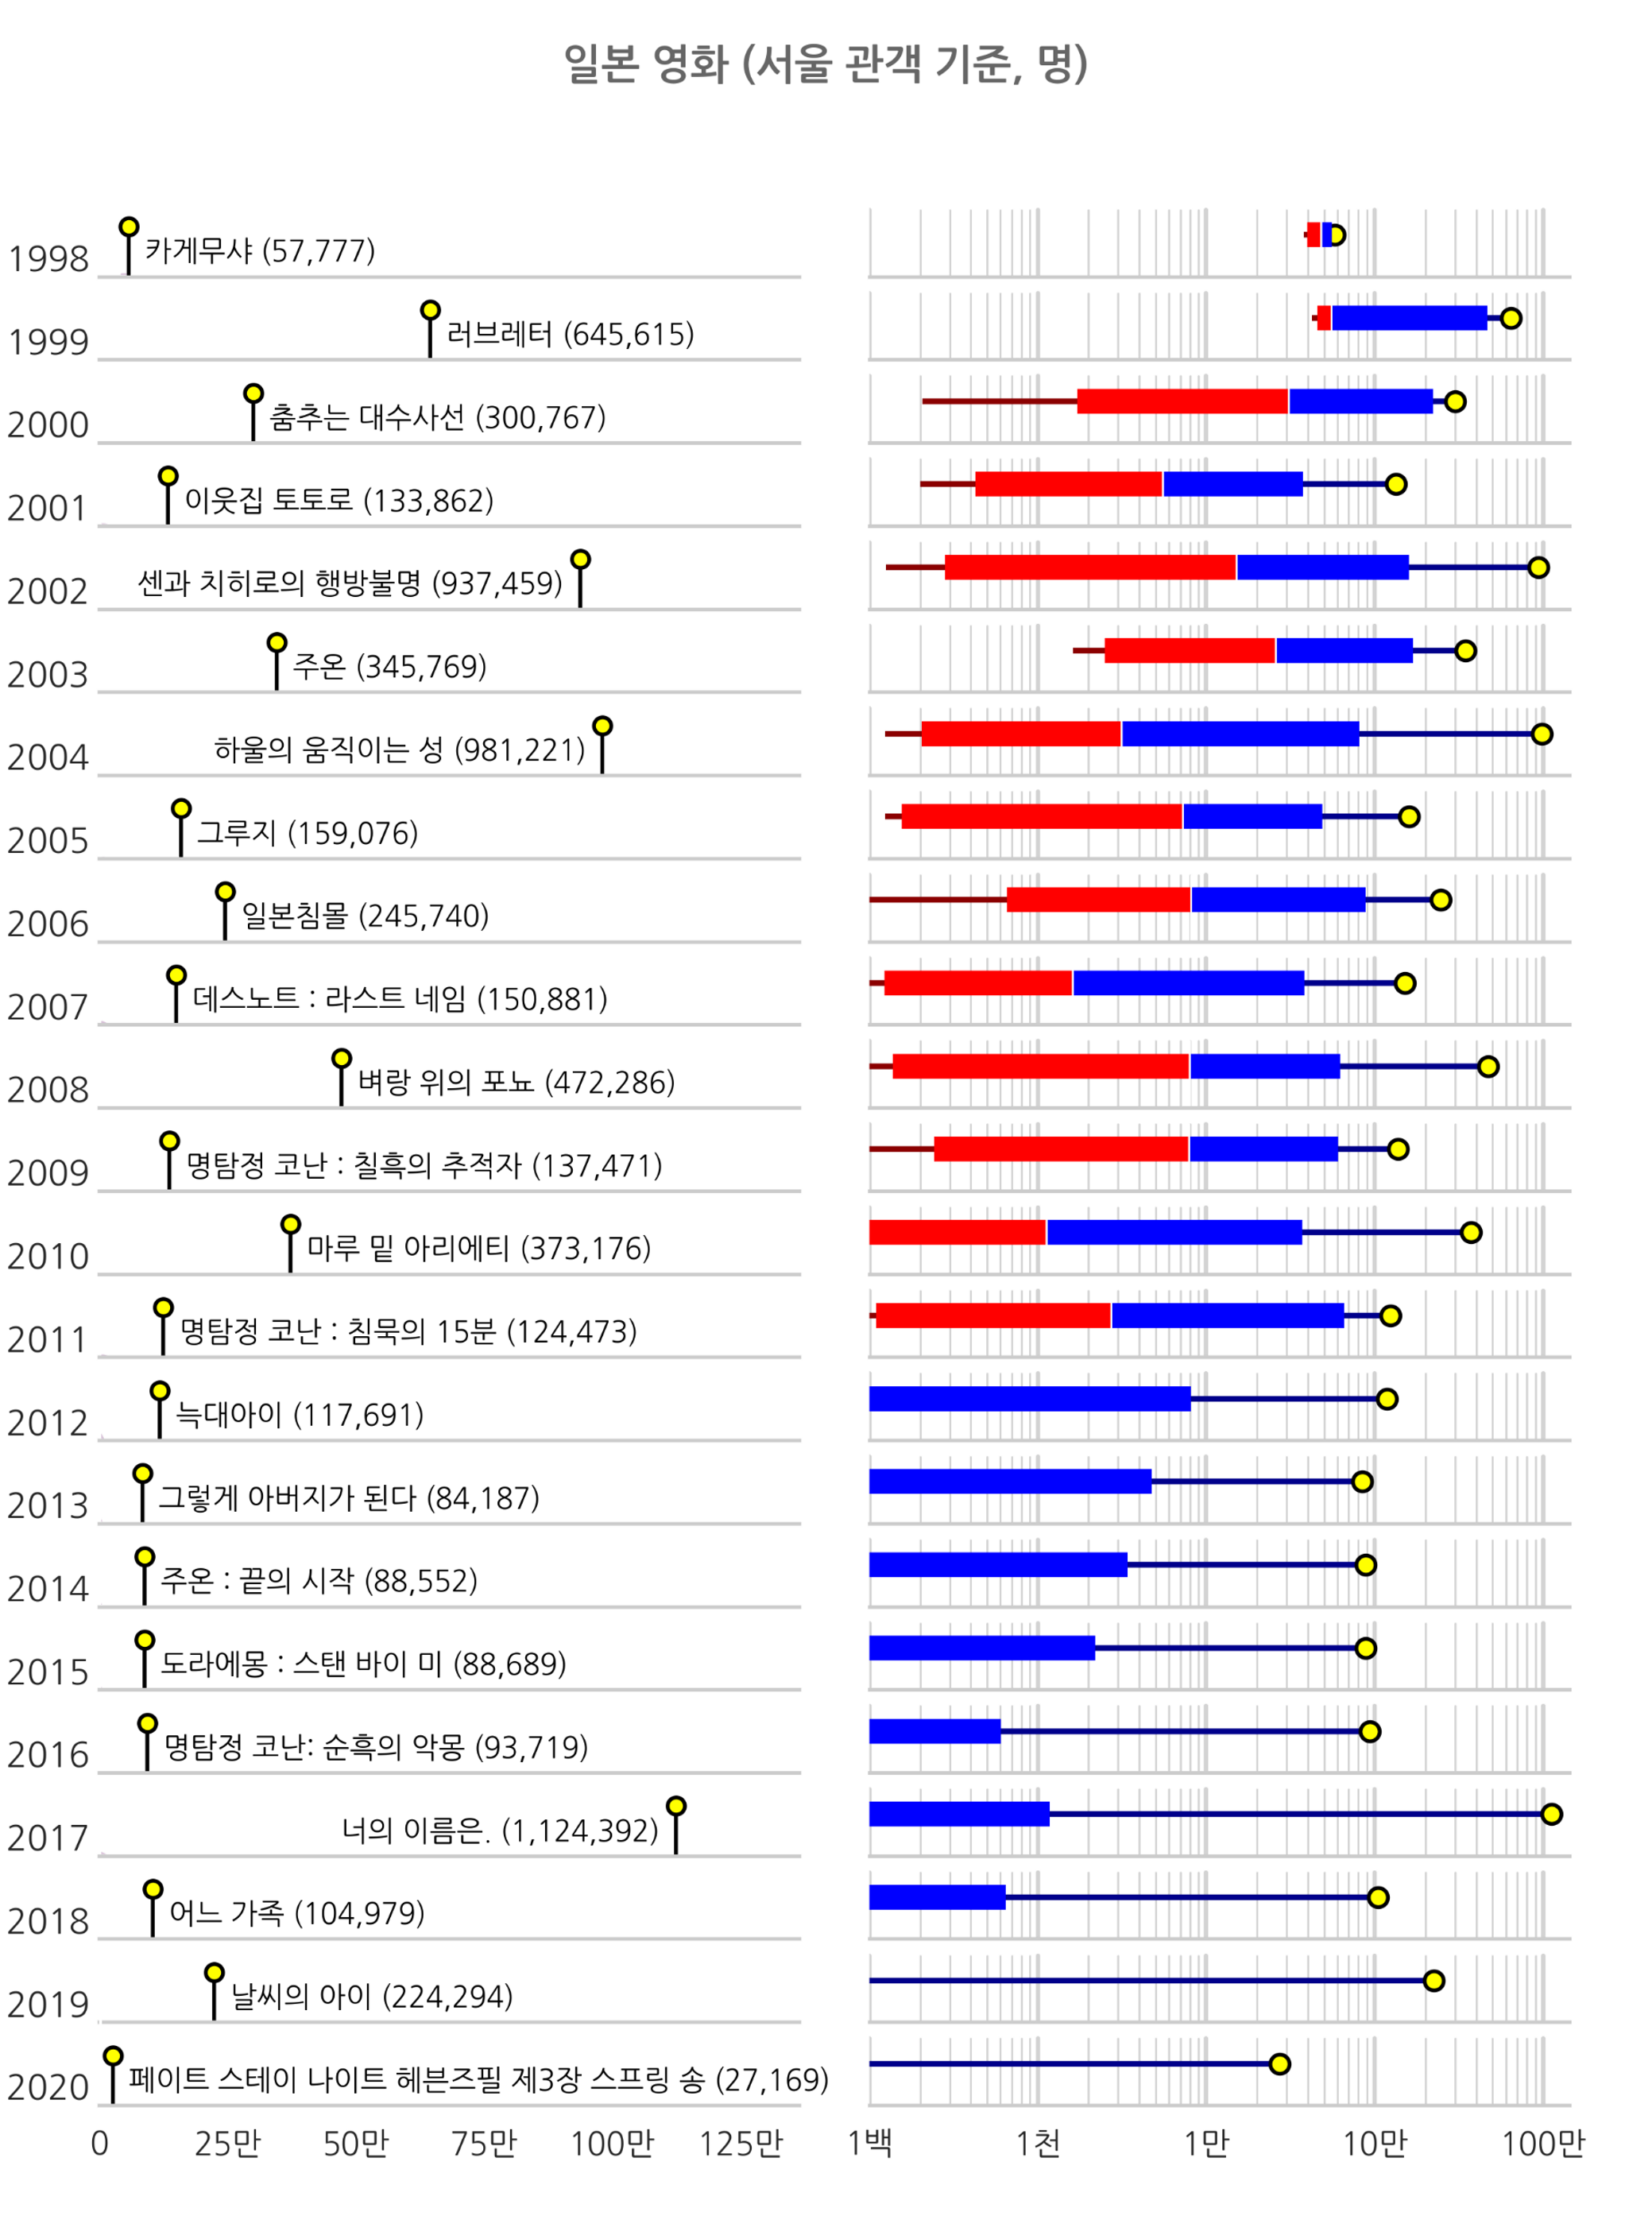 1998-2020년 일본영화 서울 관객 기준 분포도, 하단 상세 내용 참조